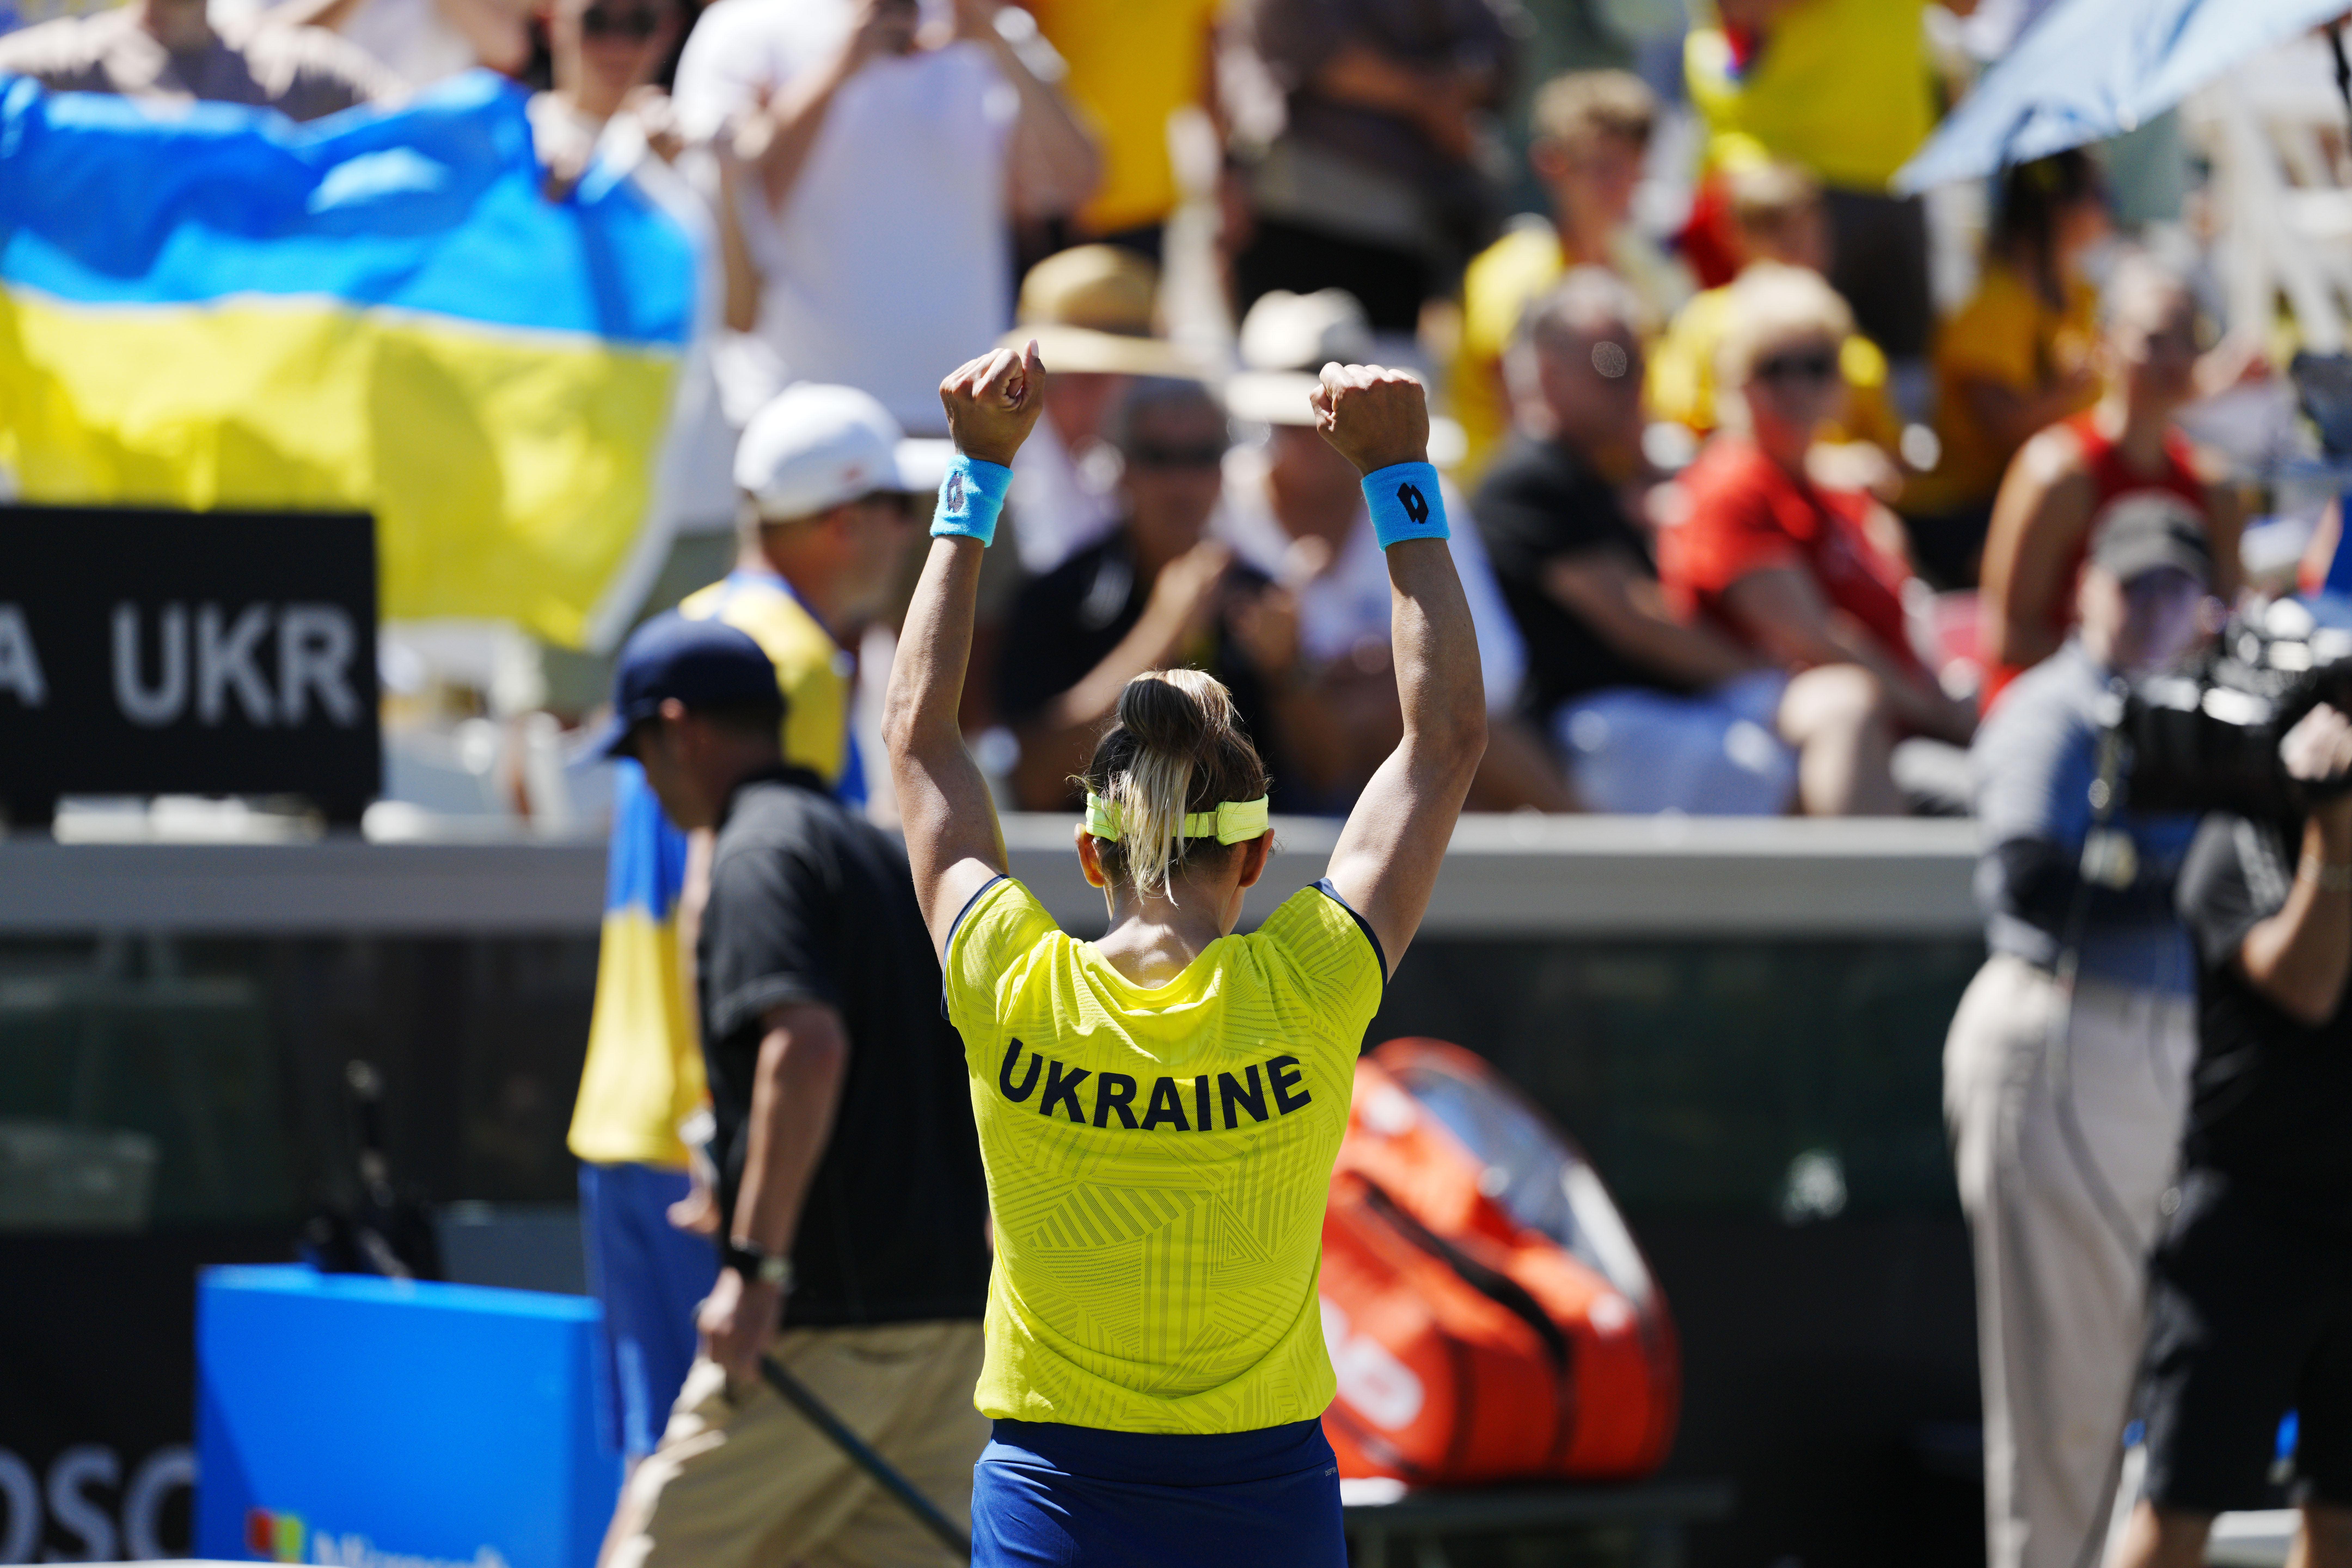 România s-a calificat în premieră la turneul final de Tenis al Billie Jean King Cup, după ce tricolorele le-au învins cu 3-2 pe ucrainence